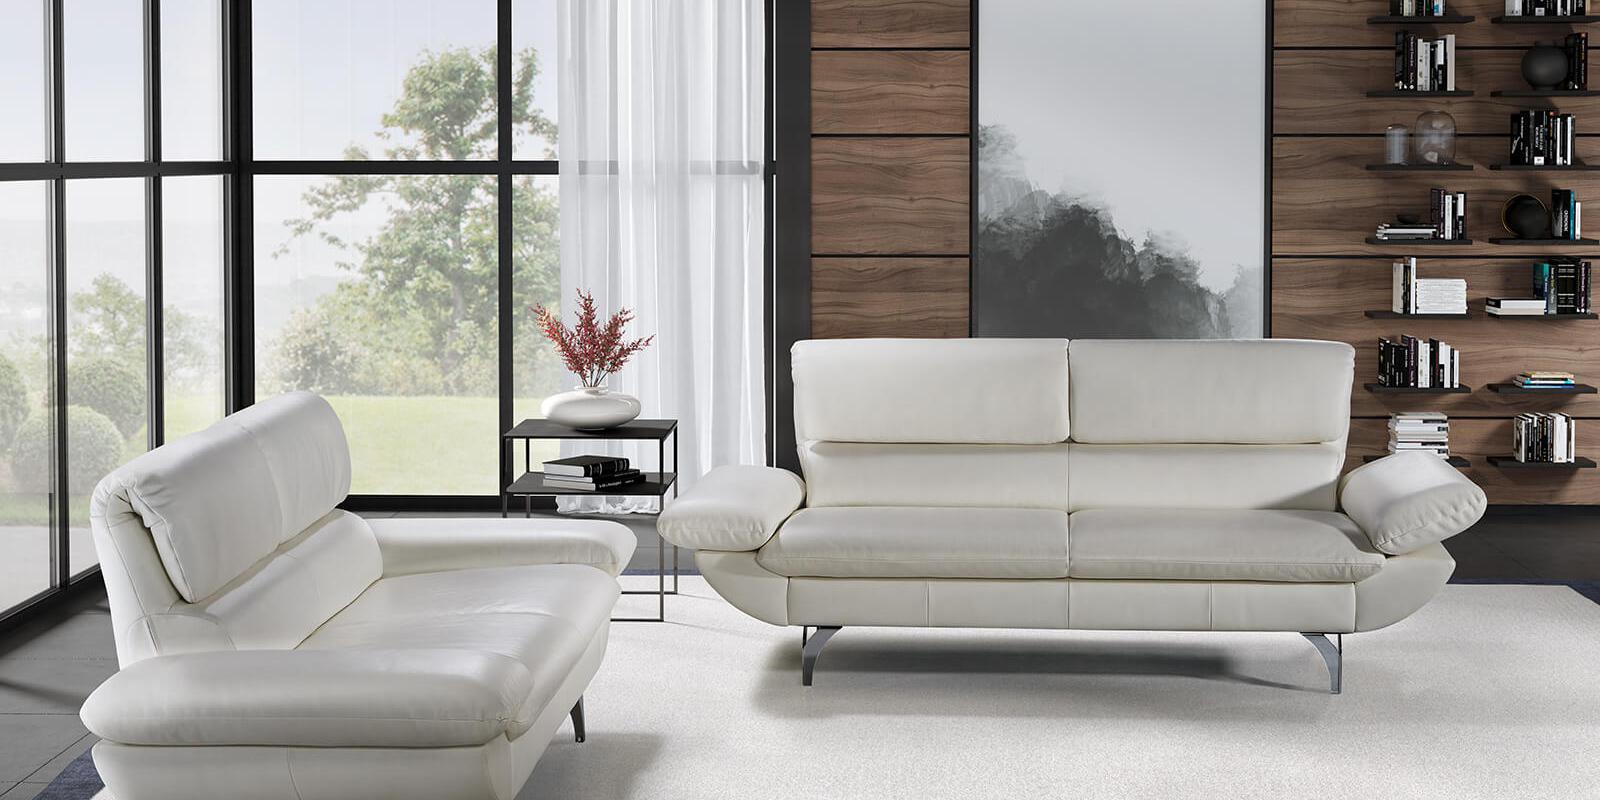 horst collection malix sofa design moebel weiss leder